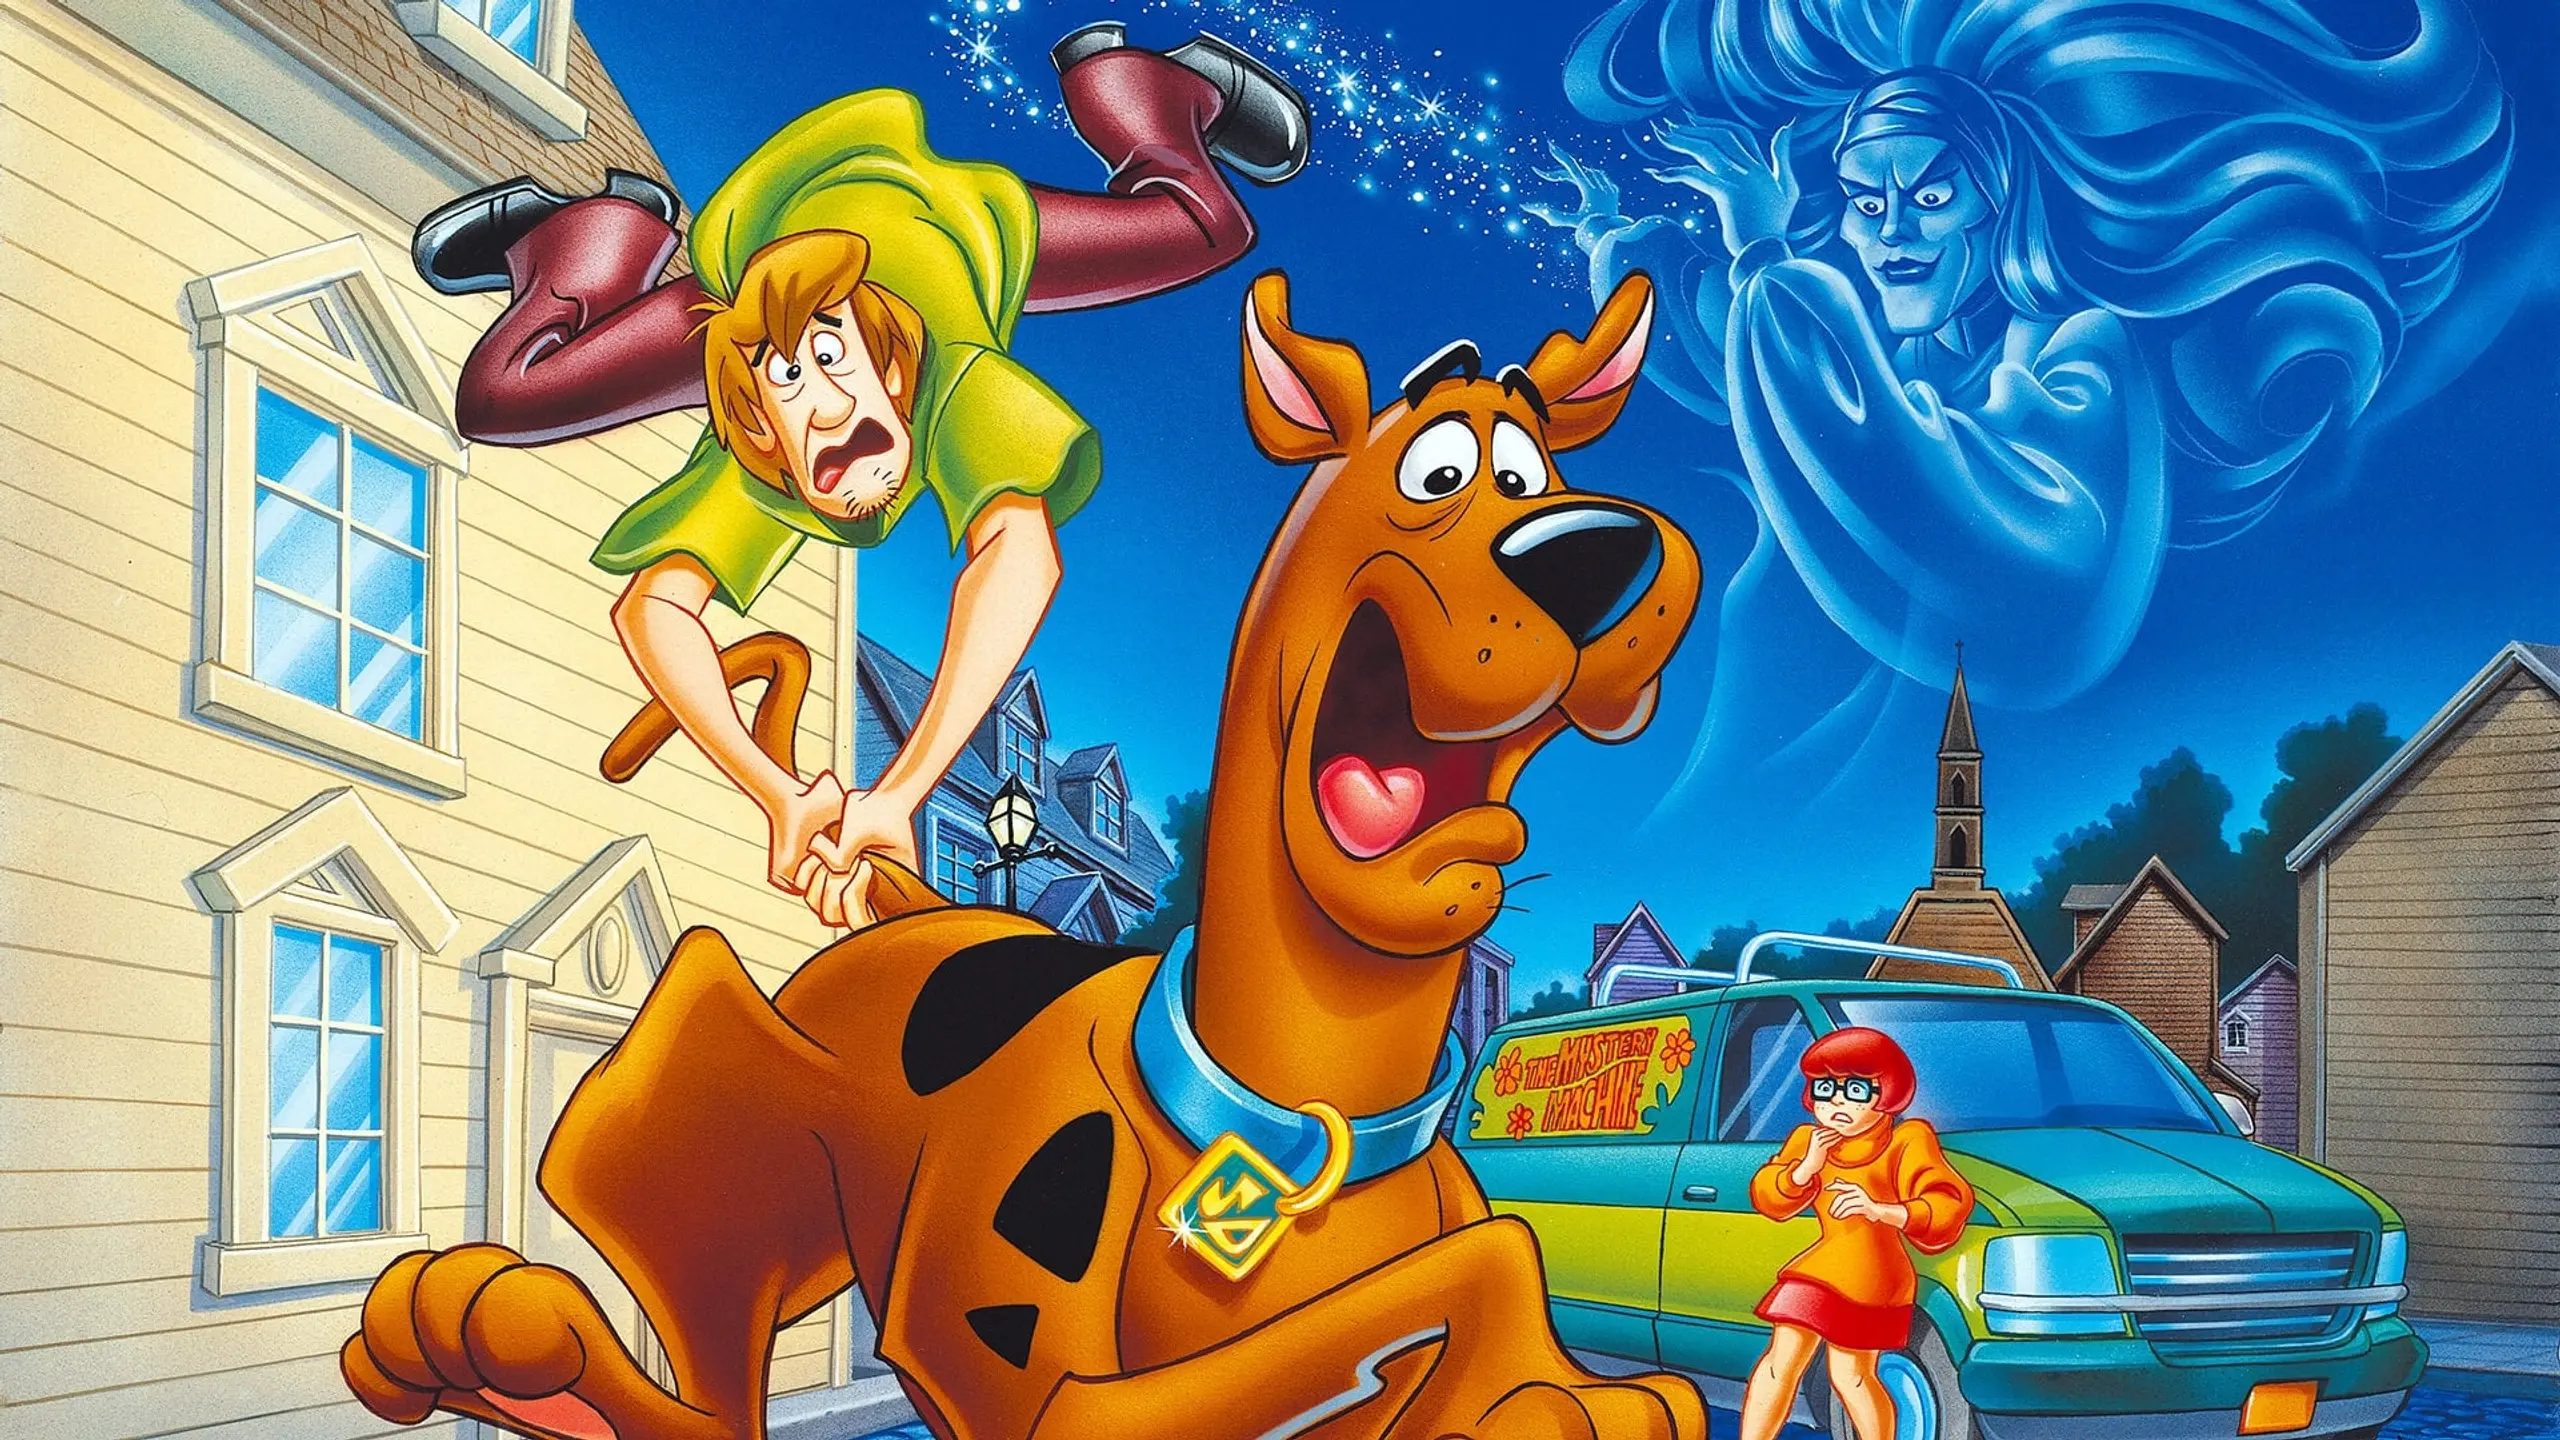 Scooby-Doo! und das Geheimnis der Hexe